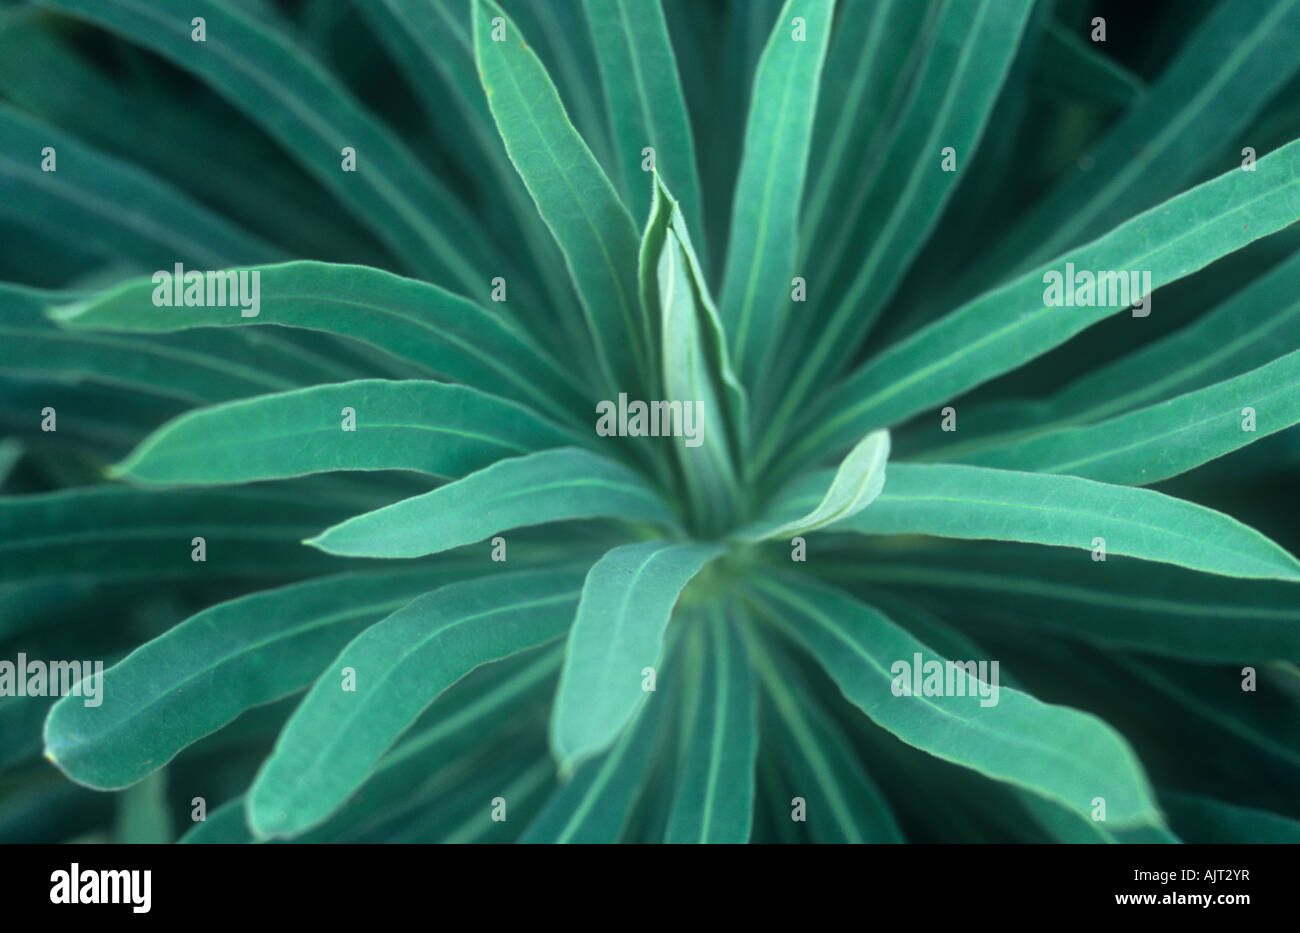 Nahaufnahme in Kopf dicht gruppierten nadelförmige blaugrüne Blätter der Grenze mehrjährige Pflanze Wolfsmilch oder Euphorbia characias Stockfoto